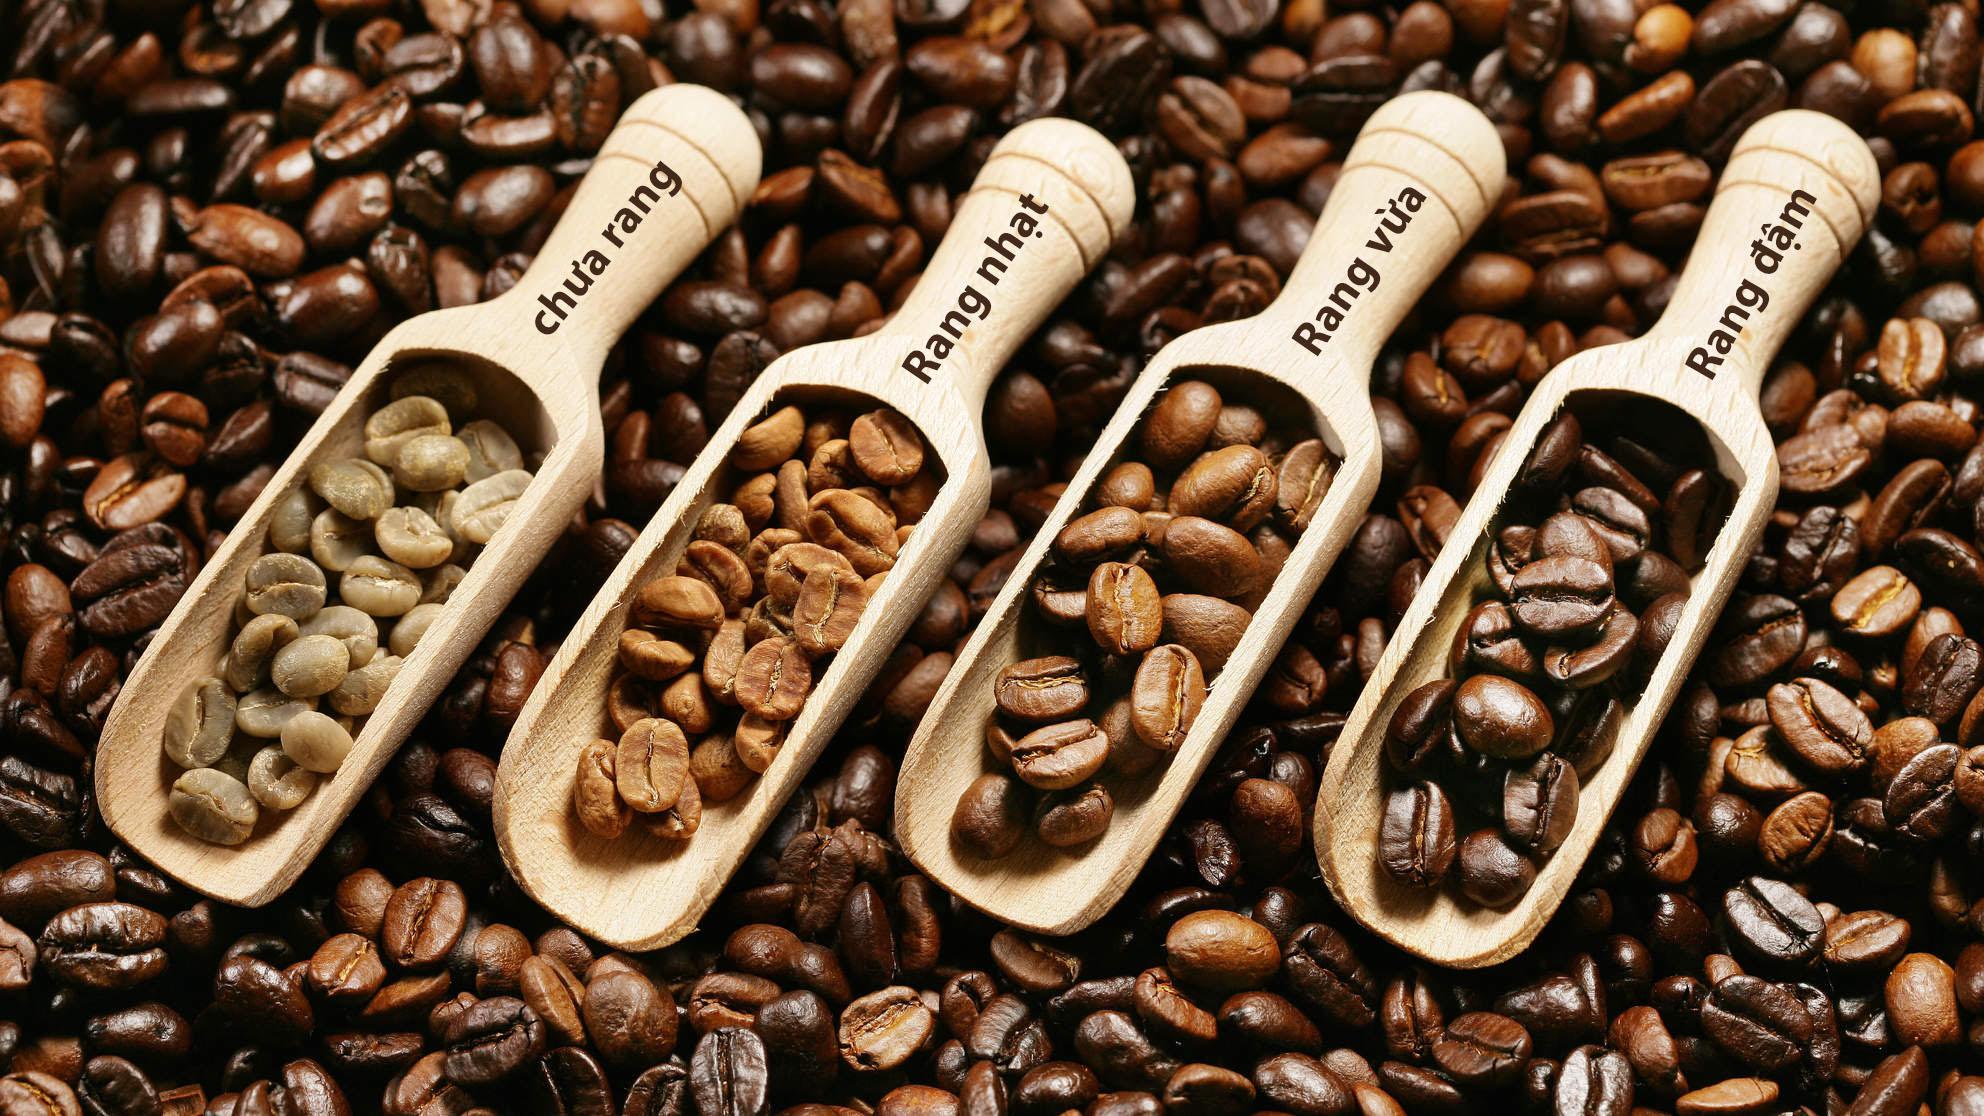 500gr cà phê rang bơ moka nhẹ nhàng - pha phin - thành phần hạt coffee moka nguyên chất - thương hiệu rey cafe 1